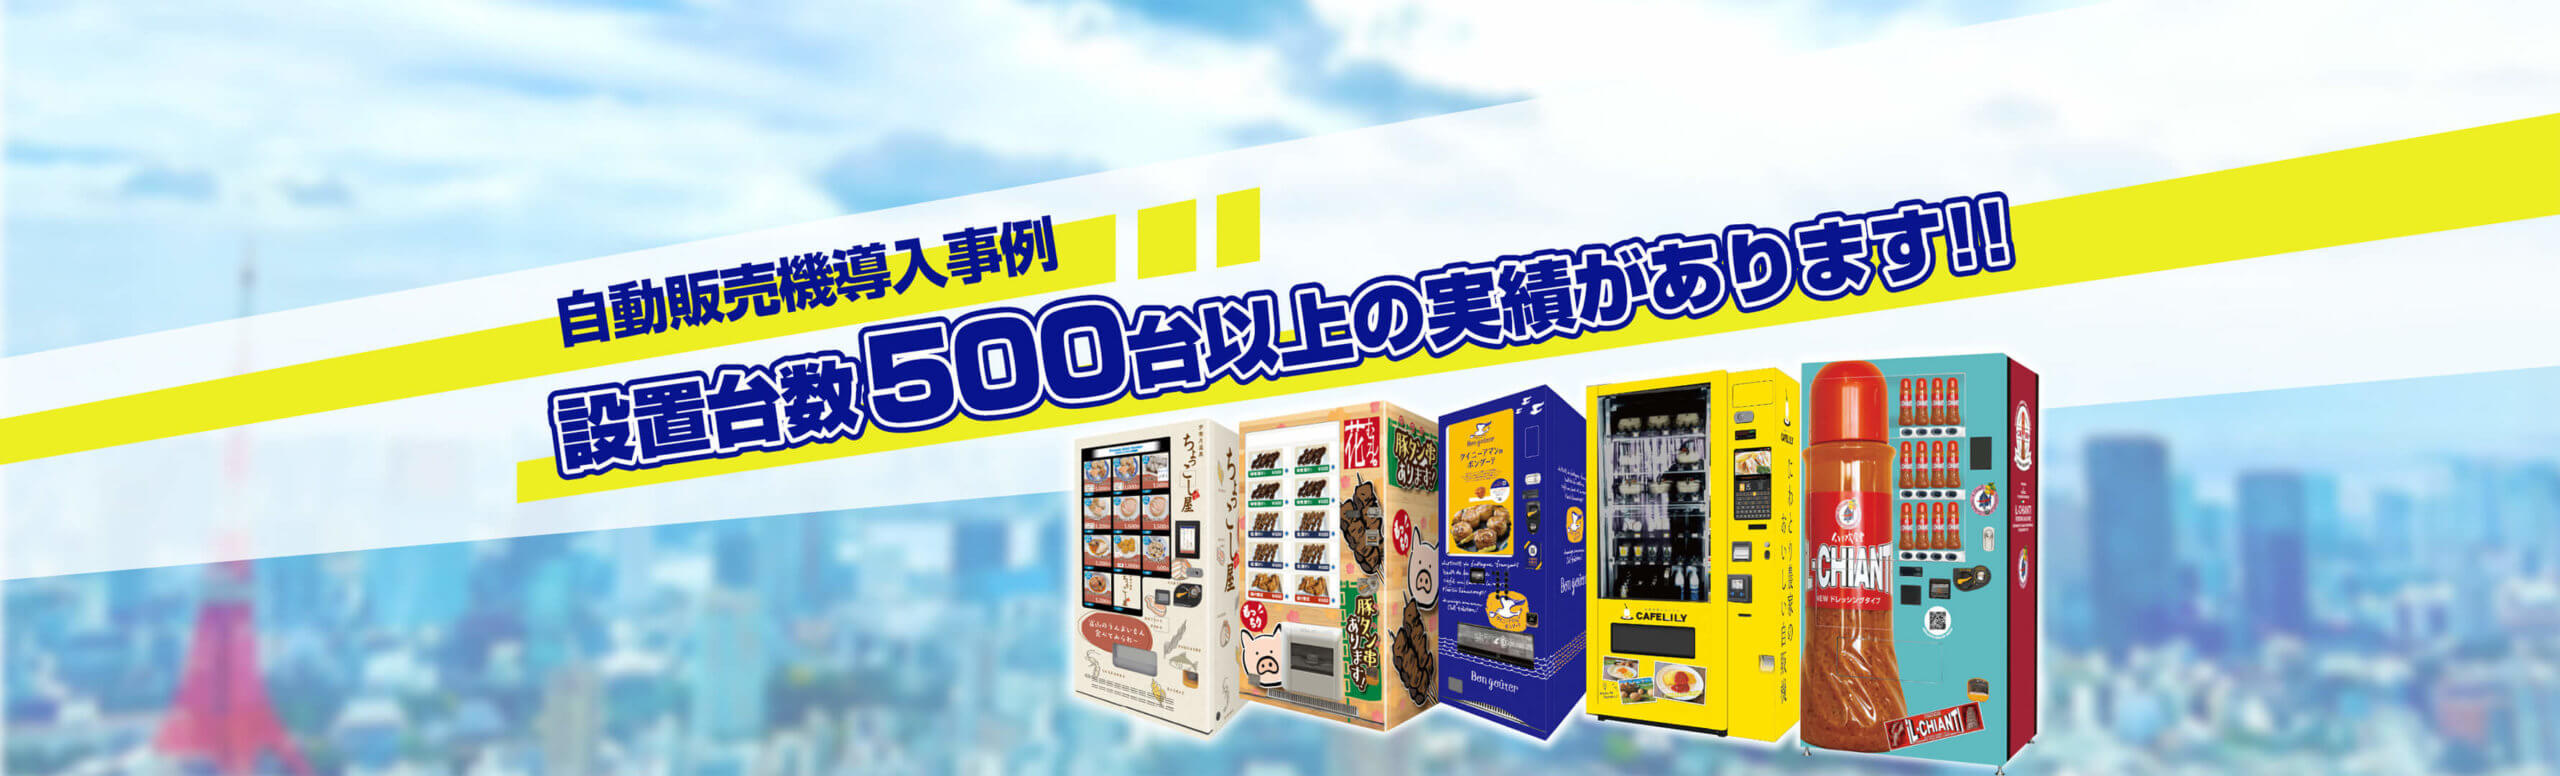 岡山医療専門職大学様に食品対応自動販売機を設置しました